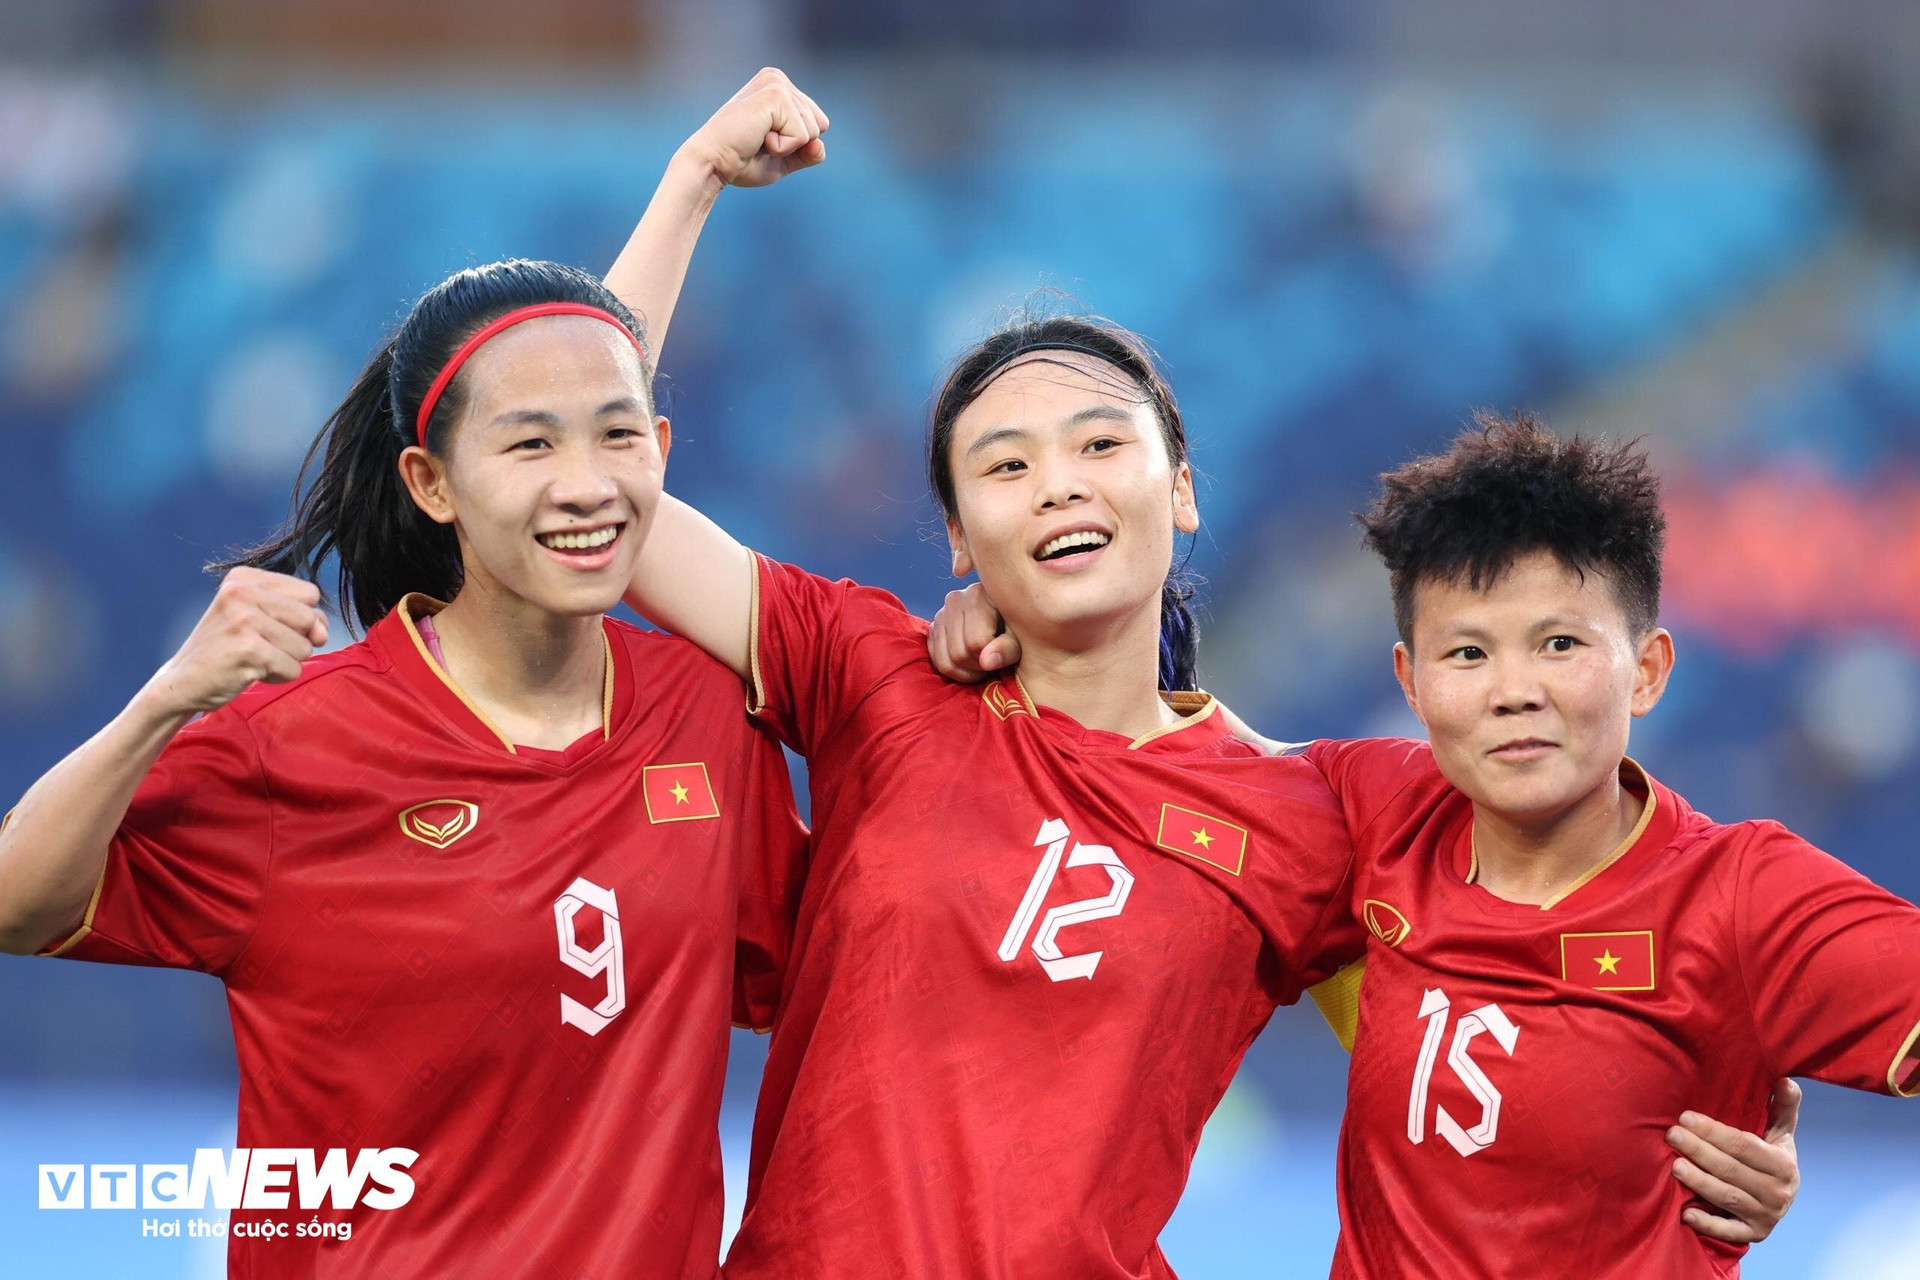 Hải Yến (12) và Bích Thùy (15) ghi bàn giúp đội tuyển nữ Việt Nam giành chiến thắng. (Ảnh: Hoàng Anh)